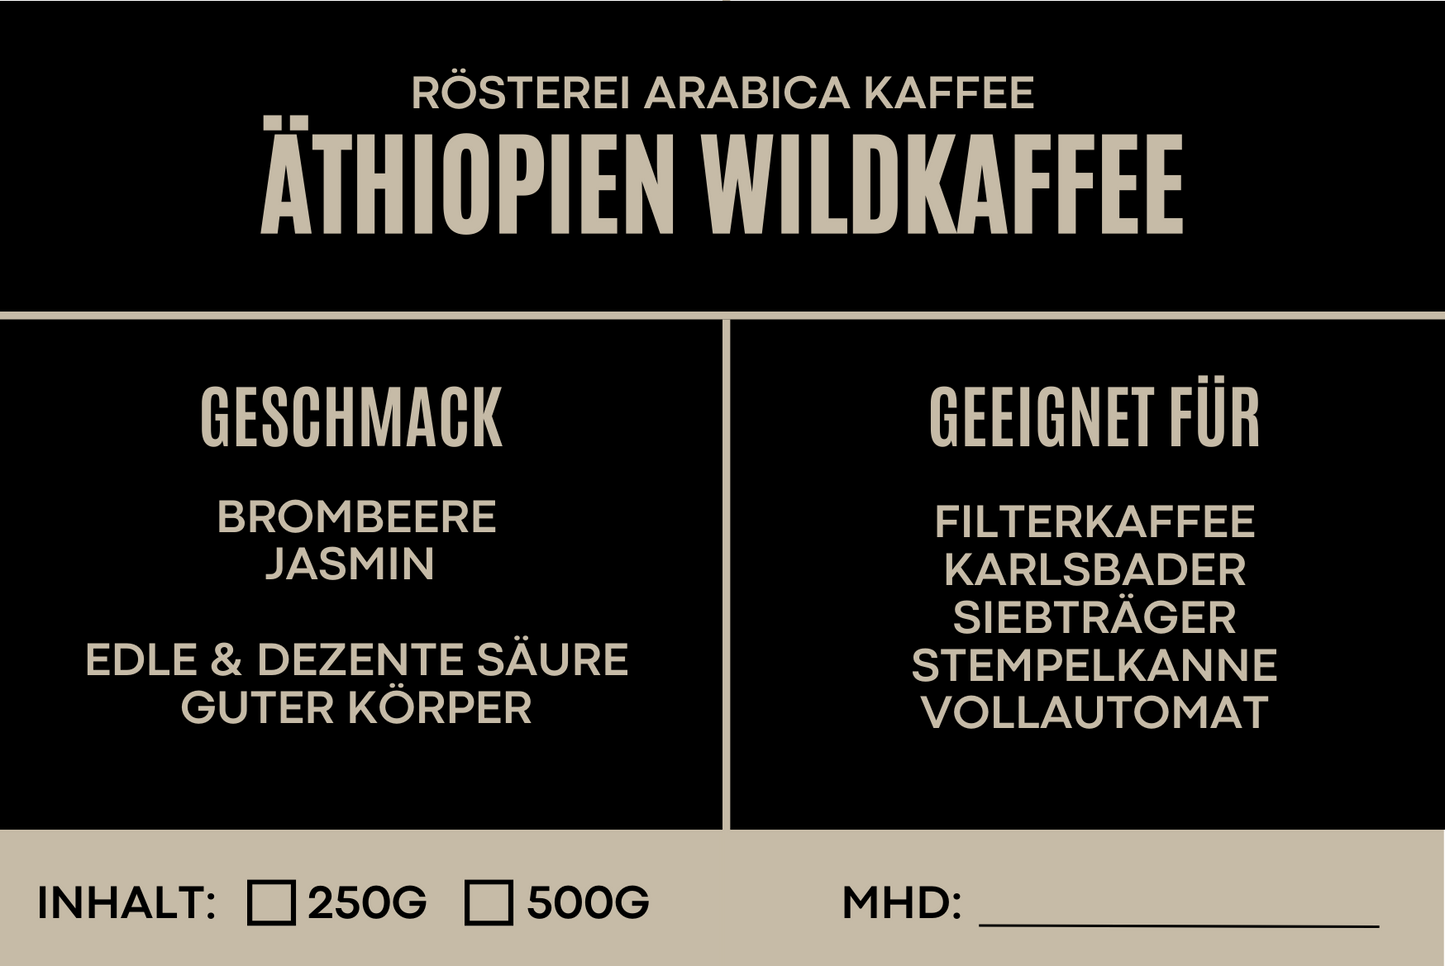 Äthiopien Wildkaffee